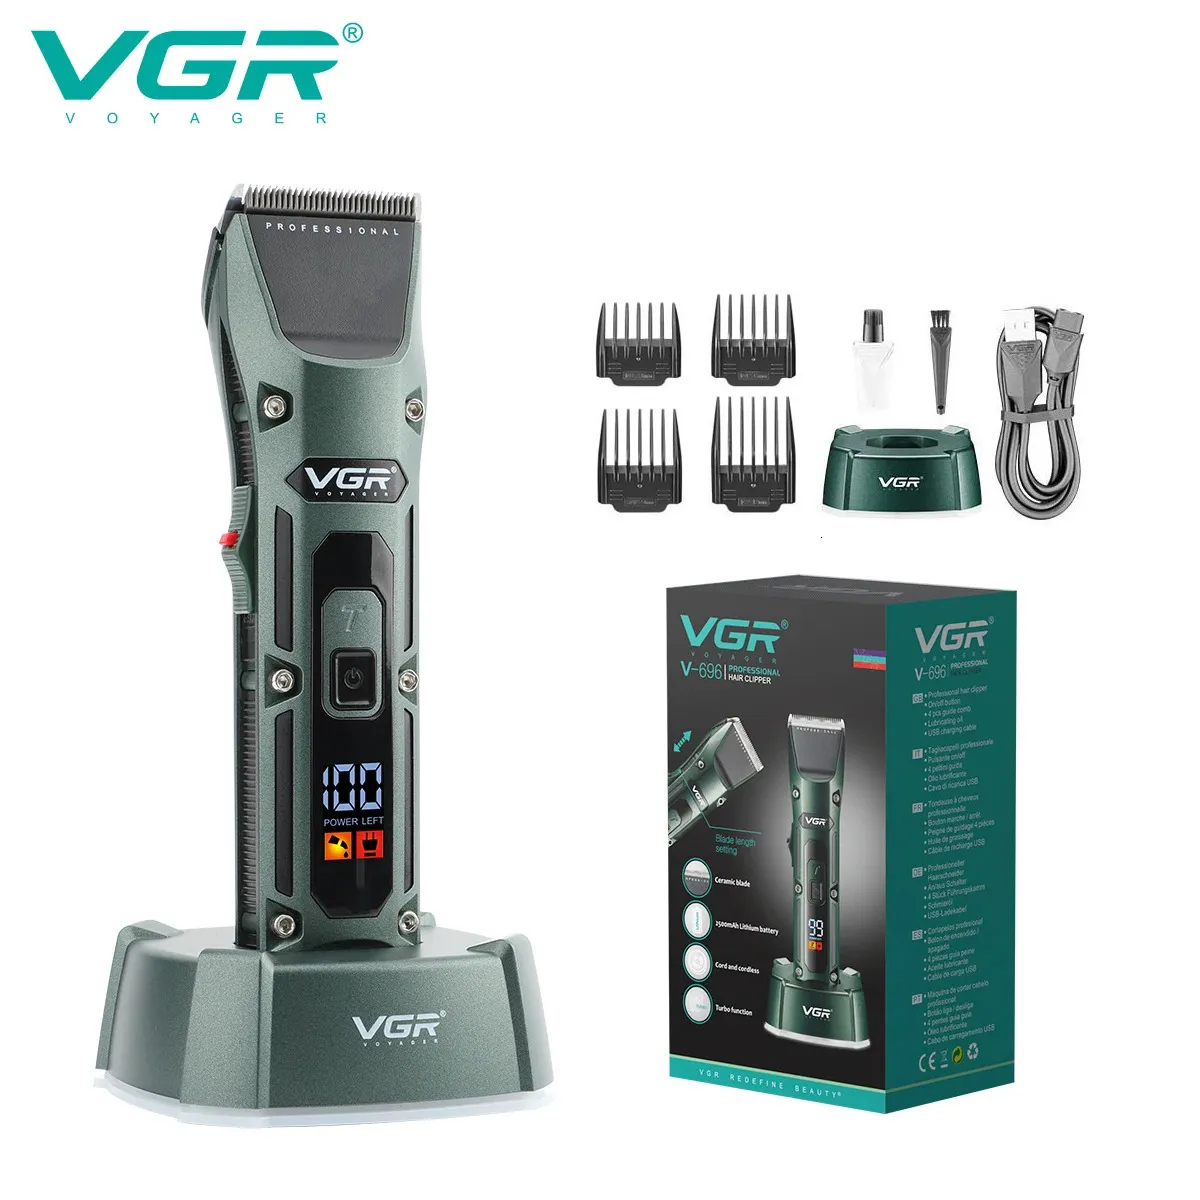 VGR Hair Clipper Professional Hair Trimmer Cordless Barber Hair Cutting Machine Digital Display Haircut Trimmer for Men V-696 240412